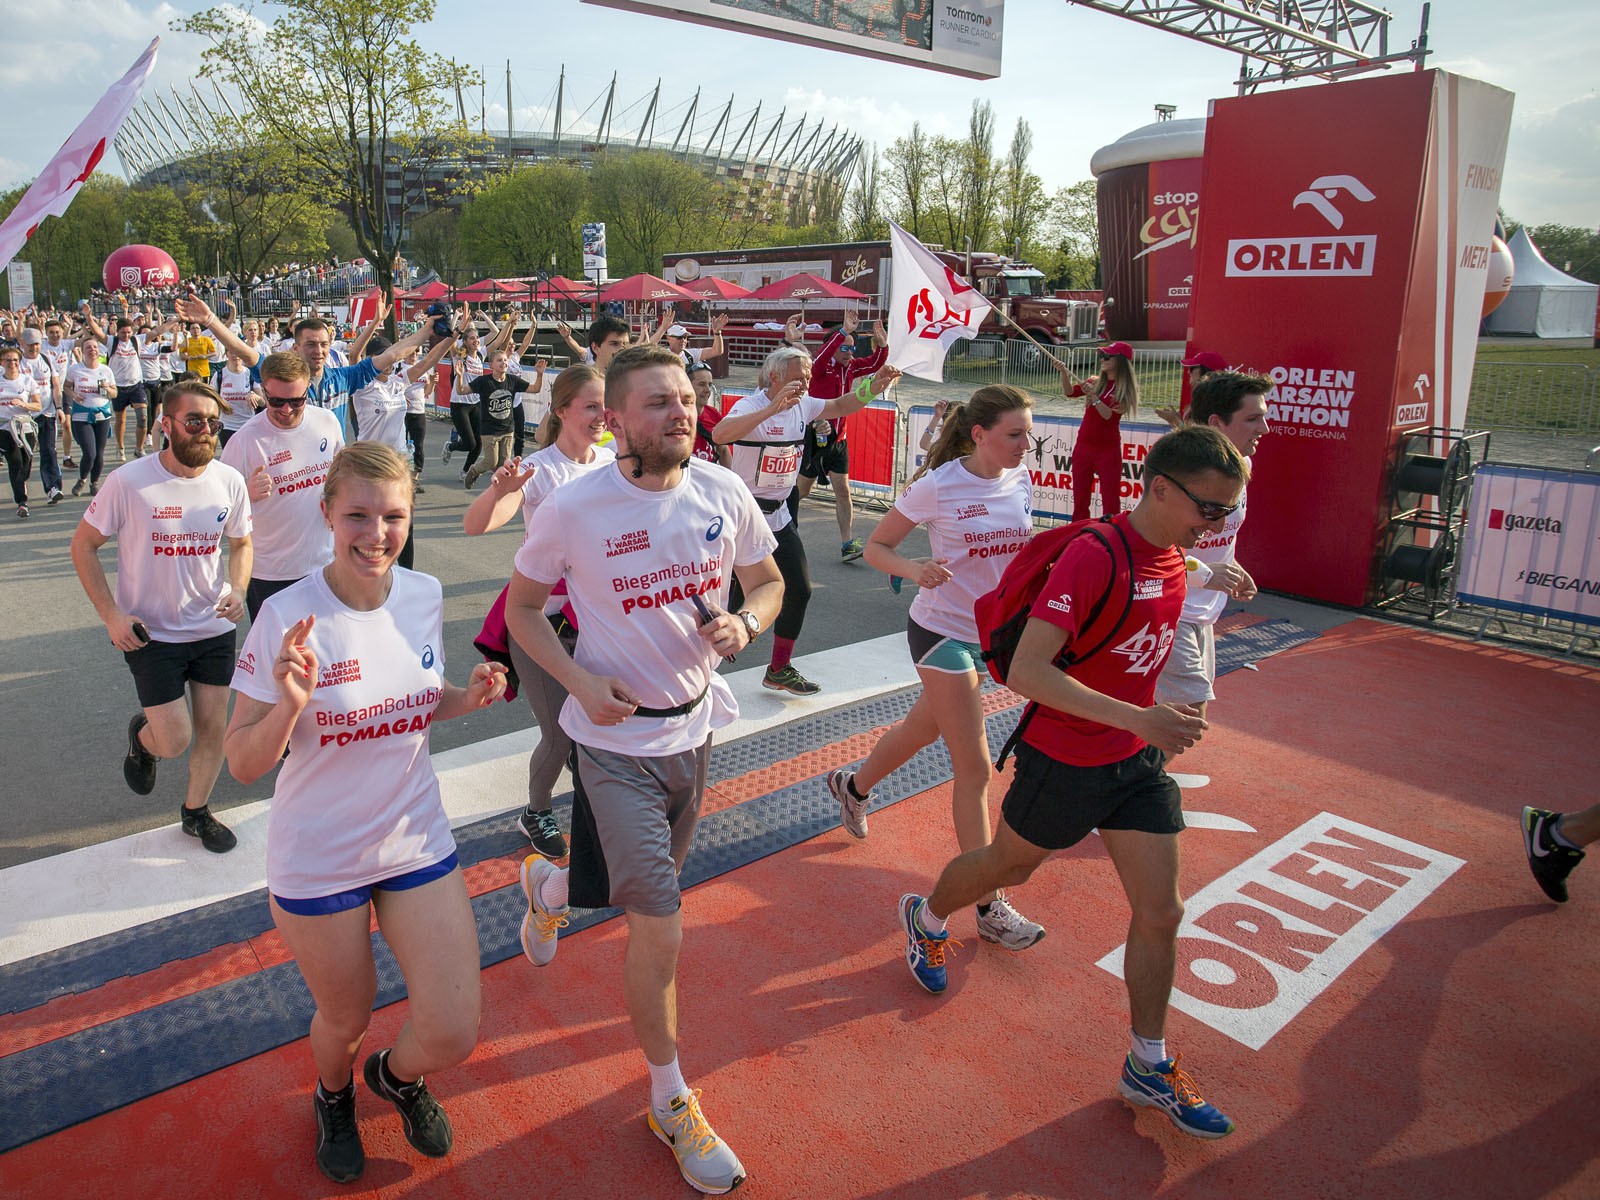 Places branding - Handpainted Orlen Warsaw Marathon finishing line in Warsaw | Orlen Warsaw Marathon | Portfolio